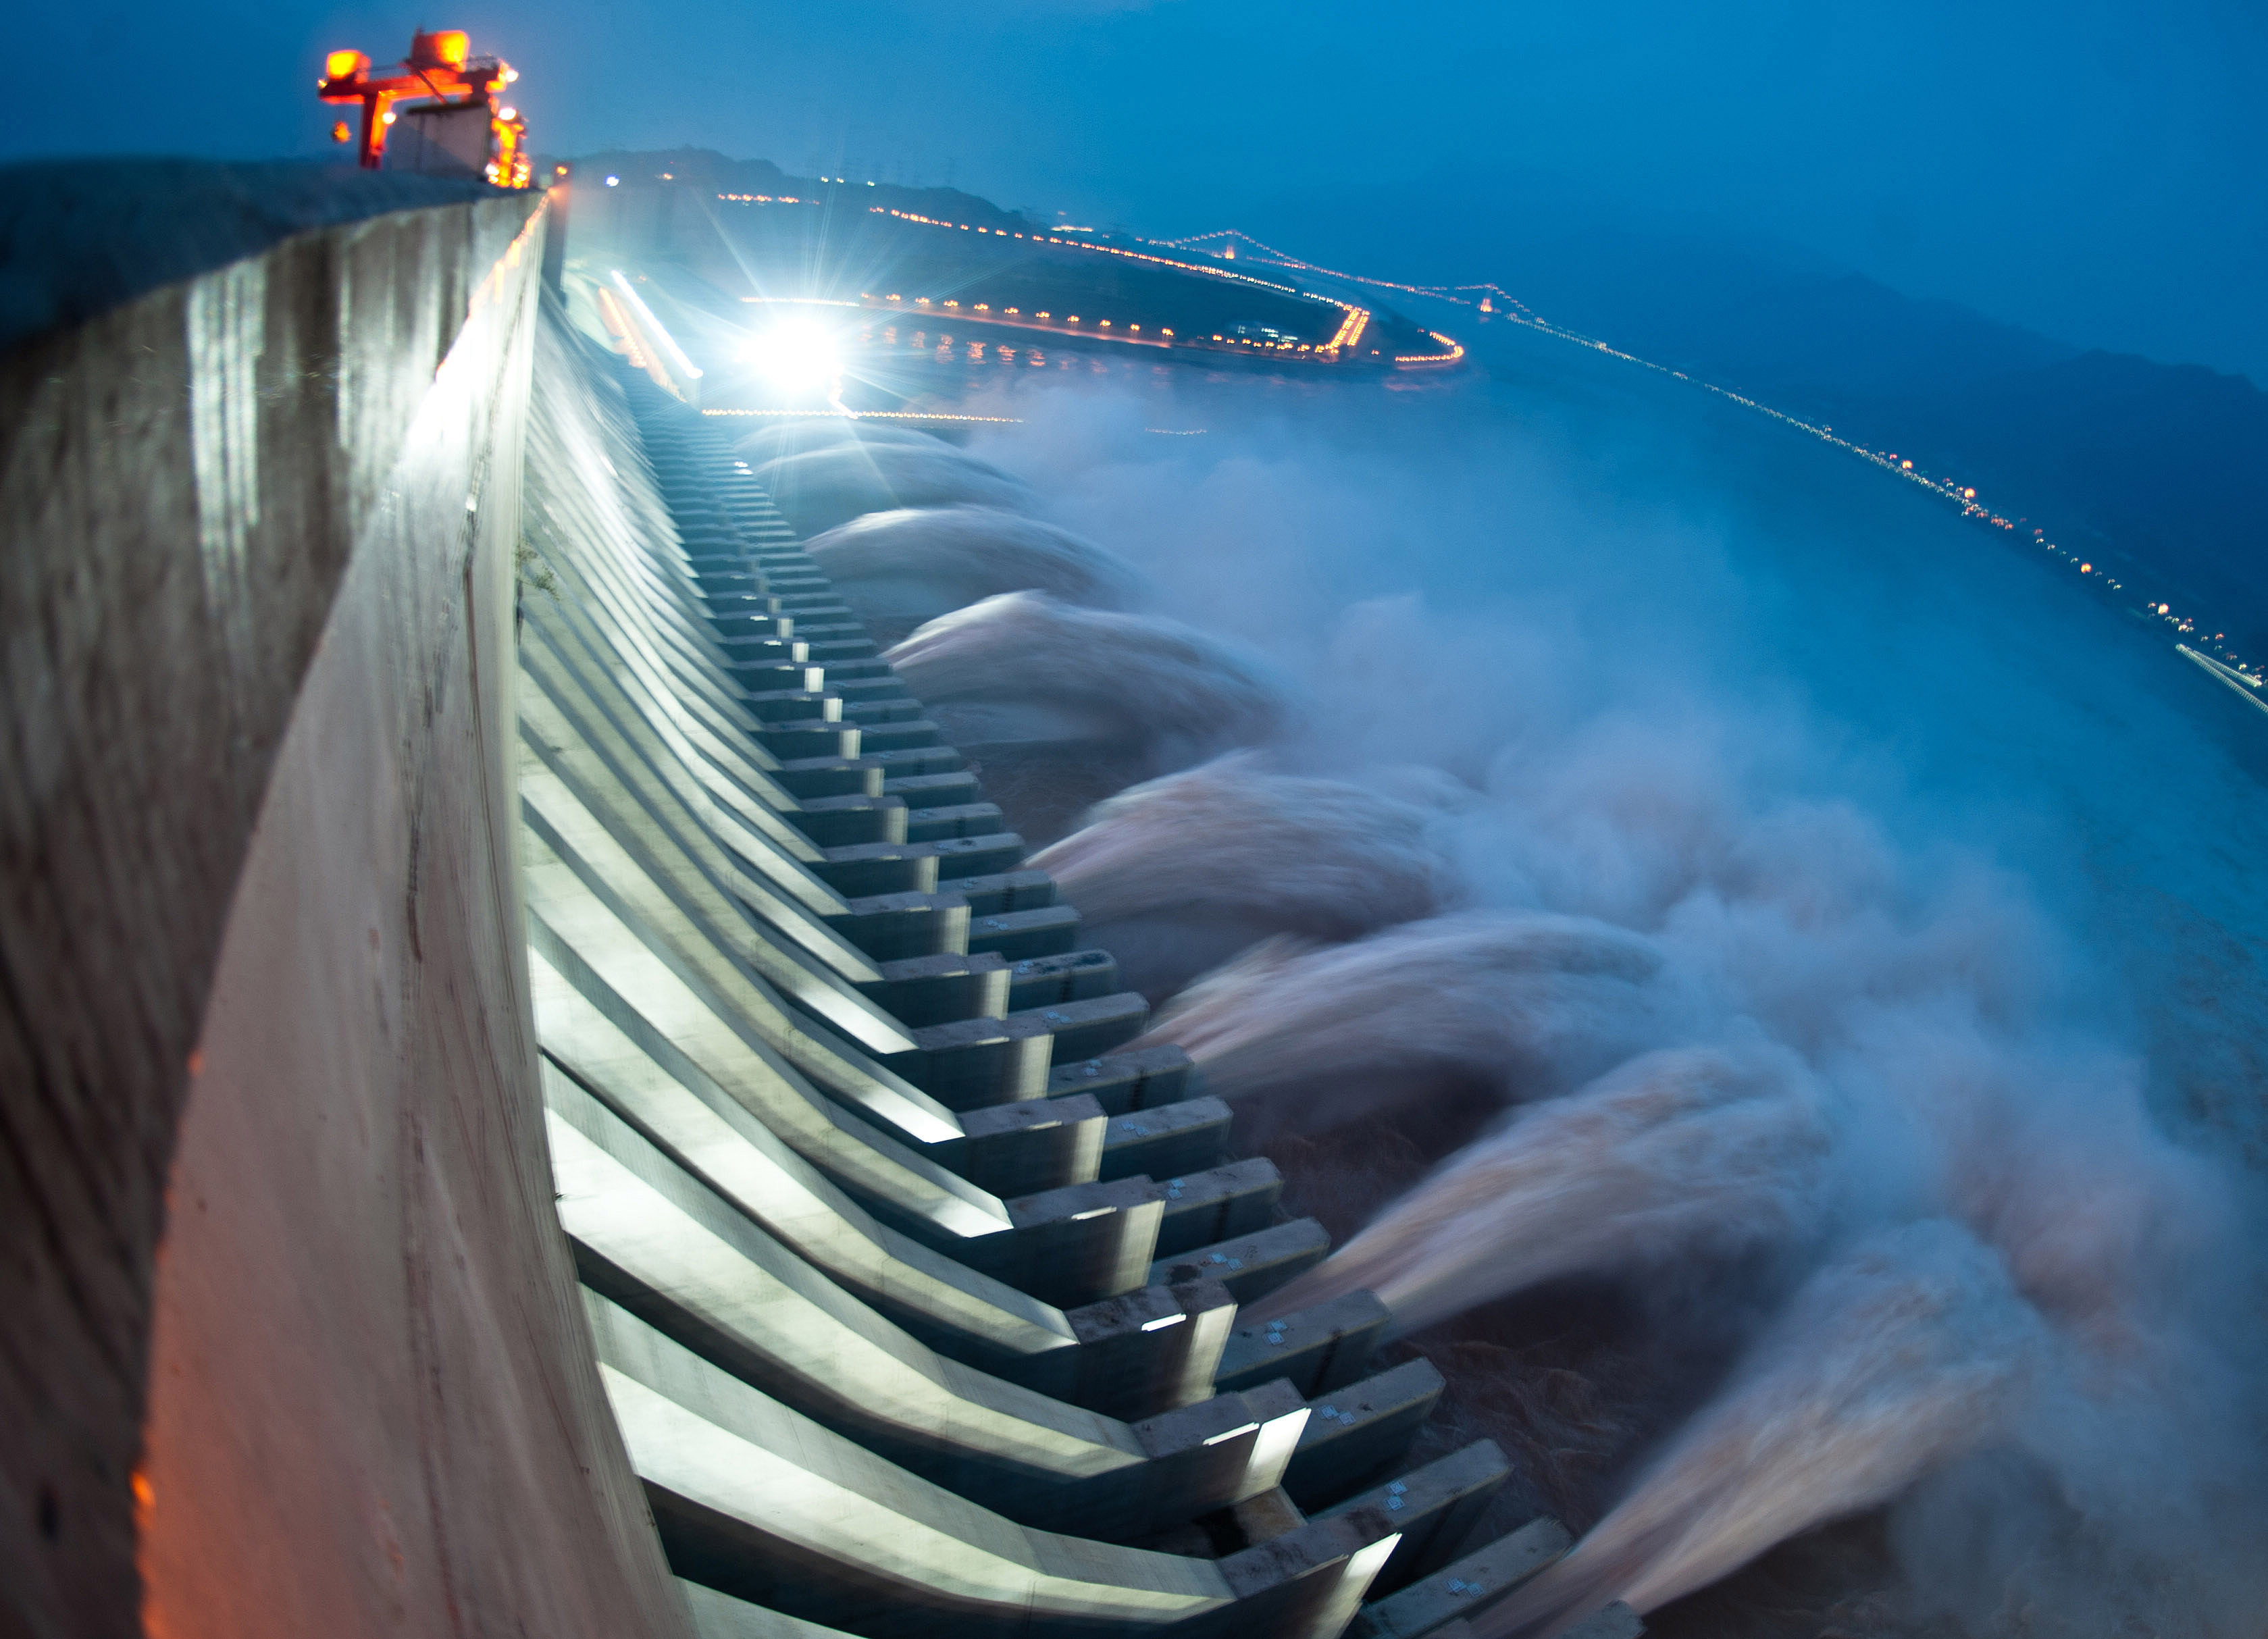 Water power 1. Гидроэлектростанция три ущелья. Китайская ГЭС три ущелья. Самая большая ГЭС В мире три ущелья. Гидроэлектростанция «три ущелья», Китай ($25 миллиардов).